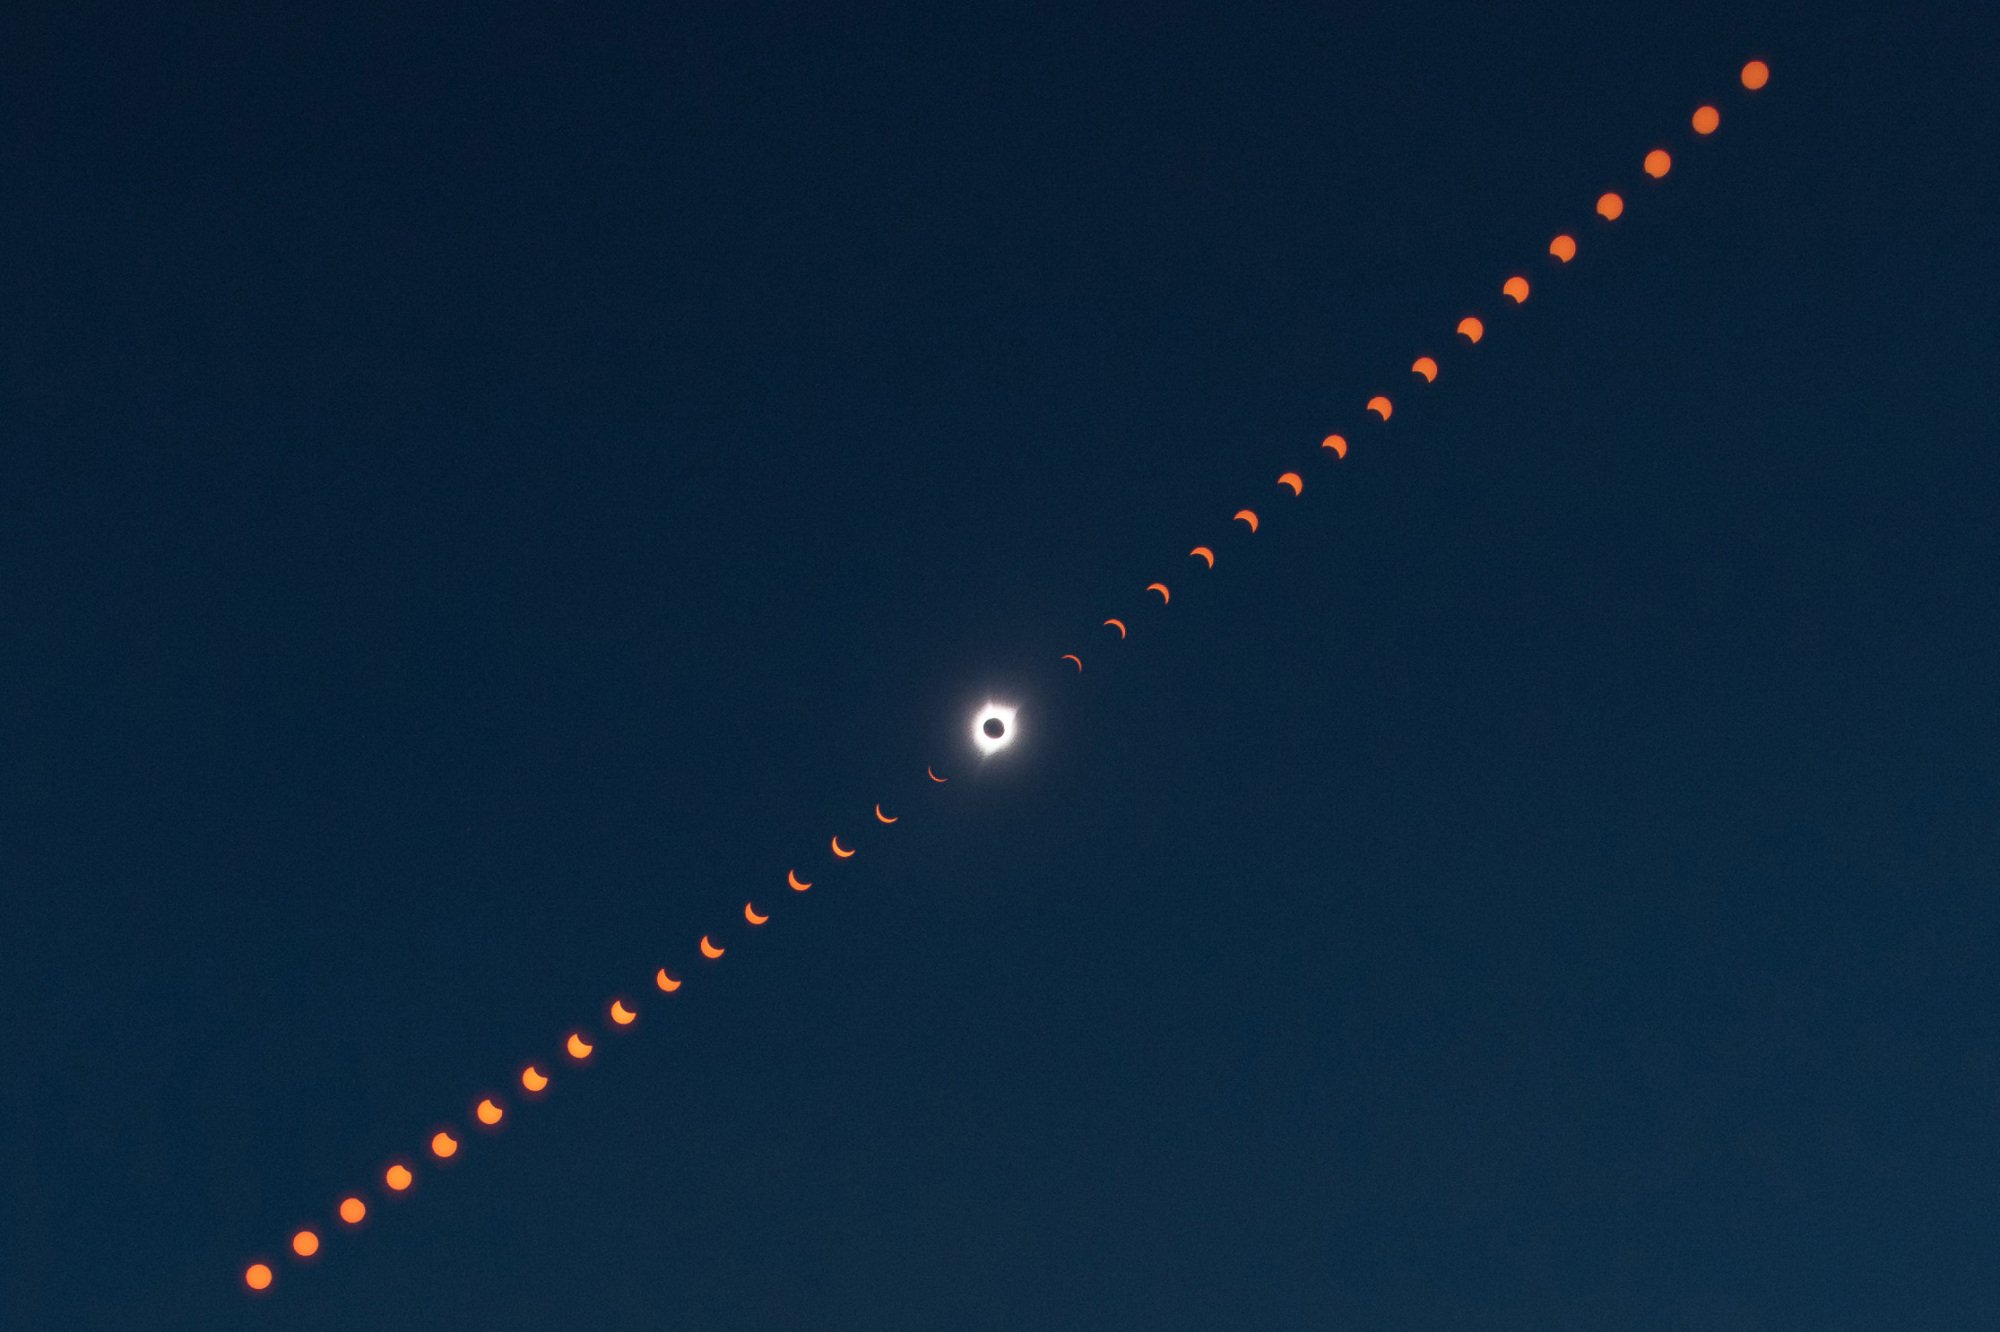 Une image composite montrant la progression de l'éclipse solaire totale de partielle à totalité, puis de nouveau à partielle.